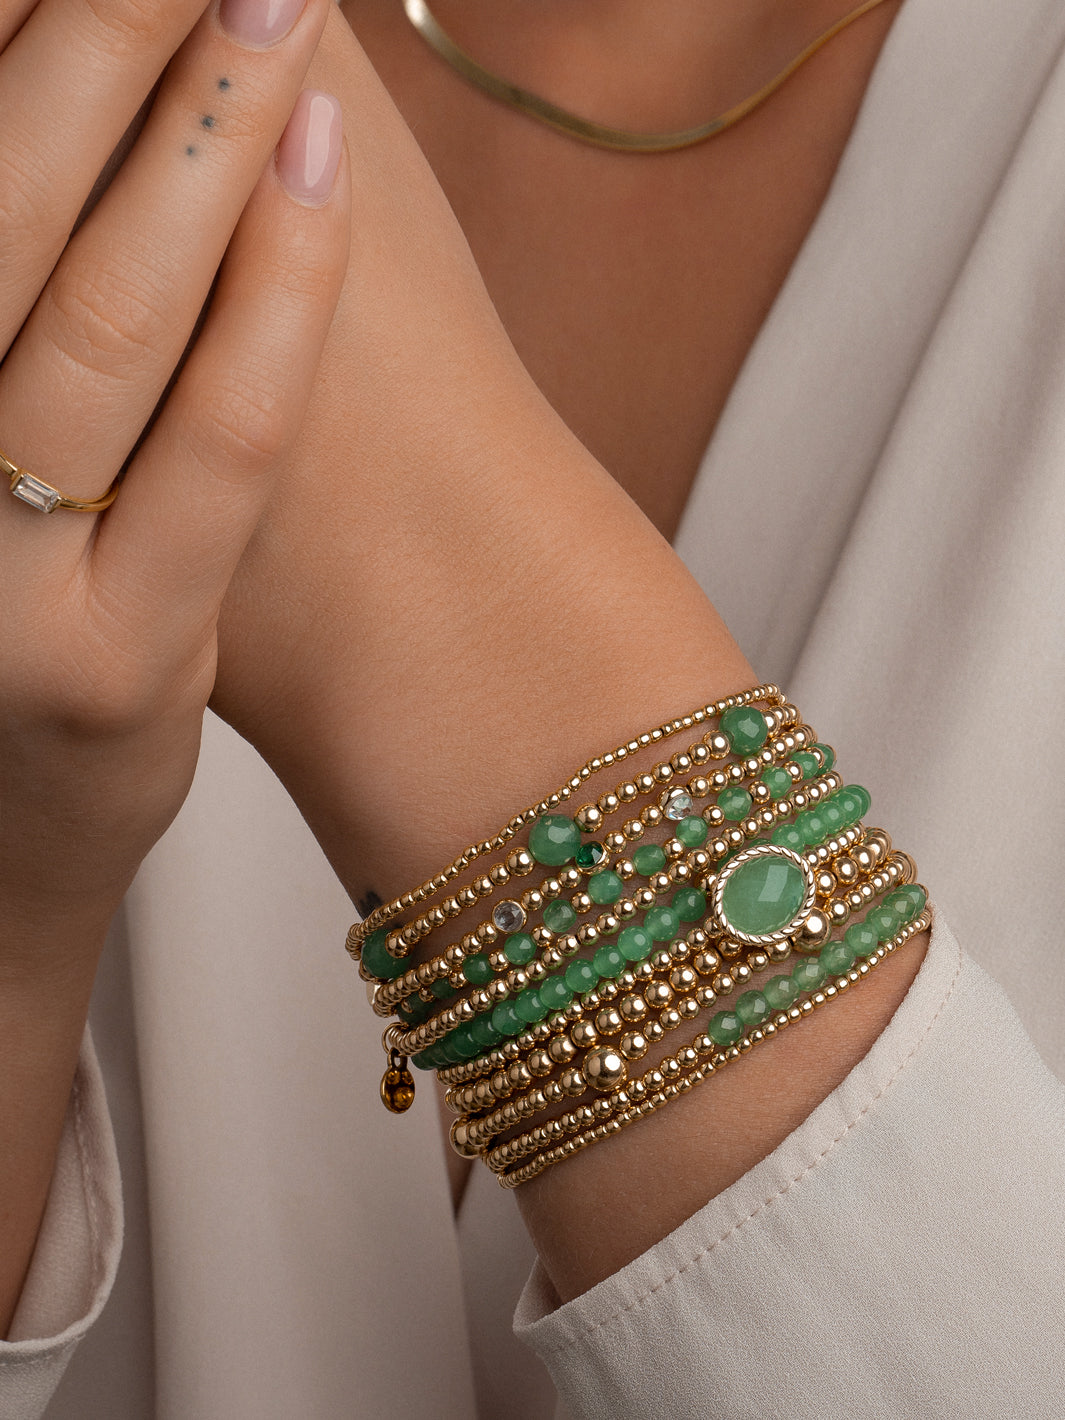 armband van Sparkling Jewels gedecoreerd met glinsterende zirkonia steentjes en gouden kralen